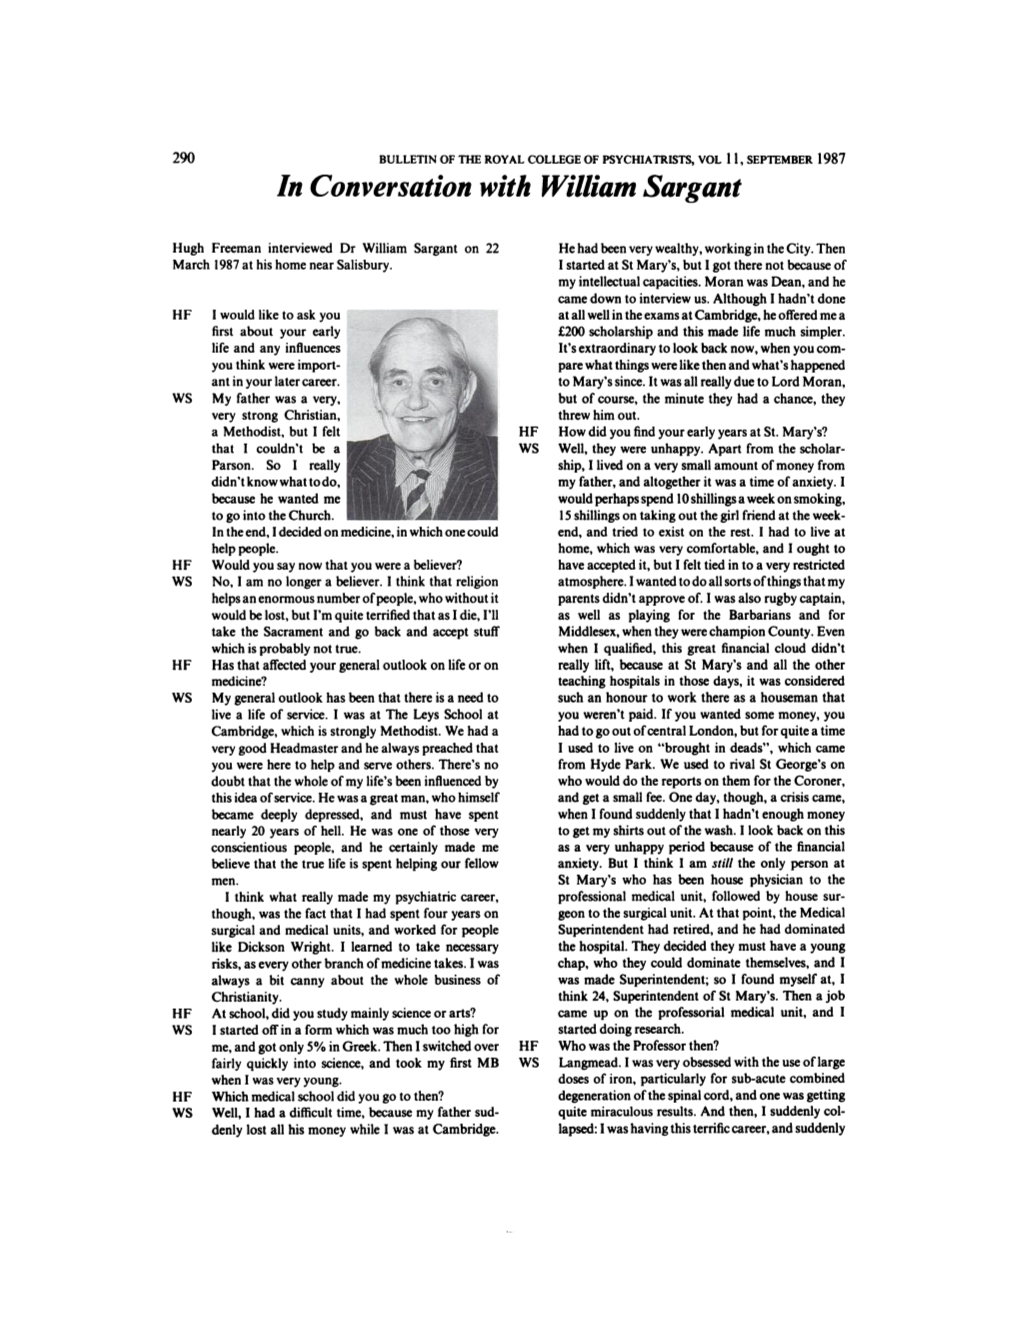 In Conversation with William Sargant